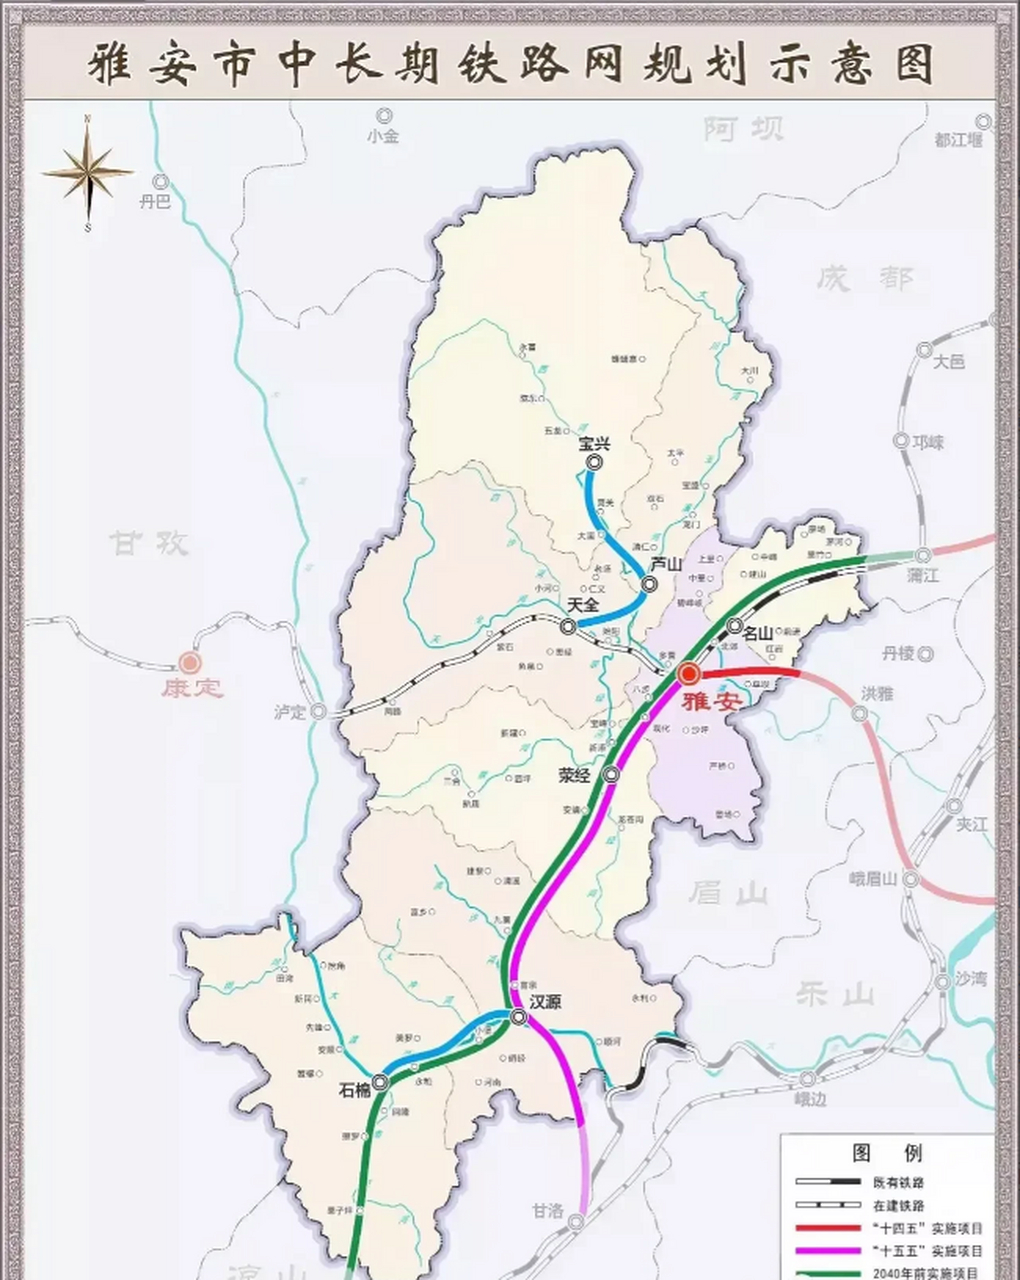 四川雅安市中长期铁路规划网,未来的雅安也是安排了县县通高铁